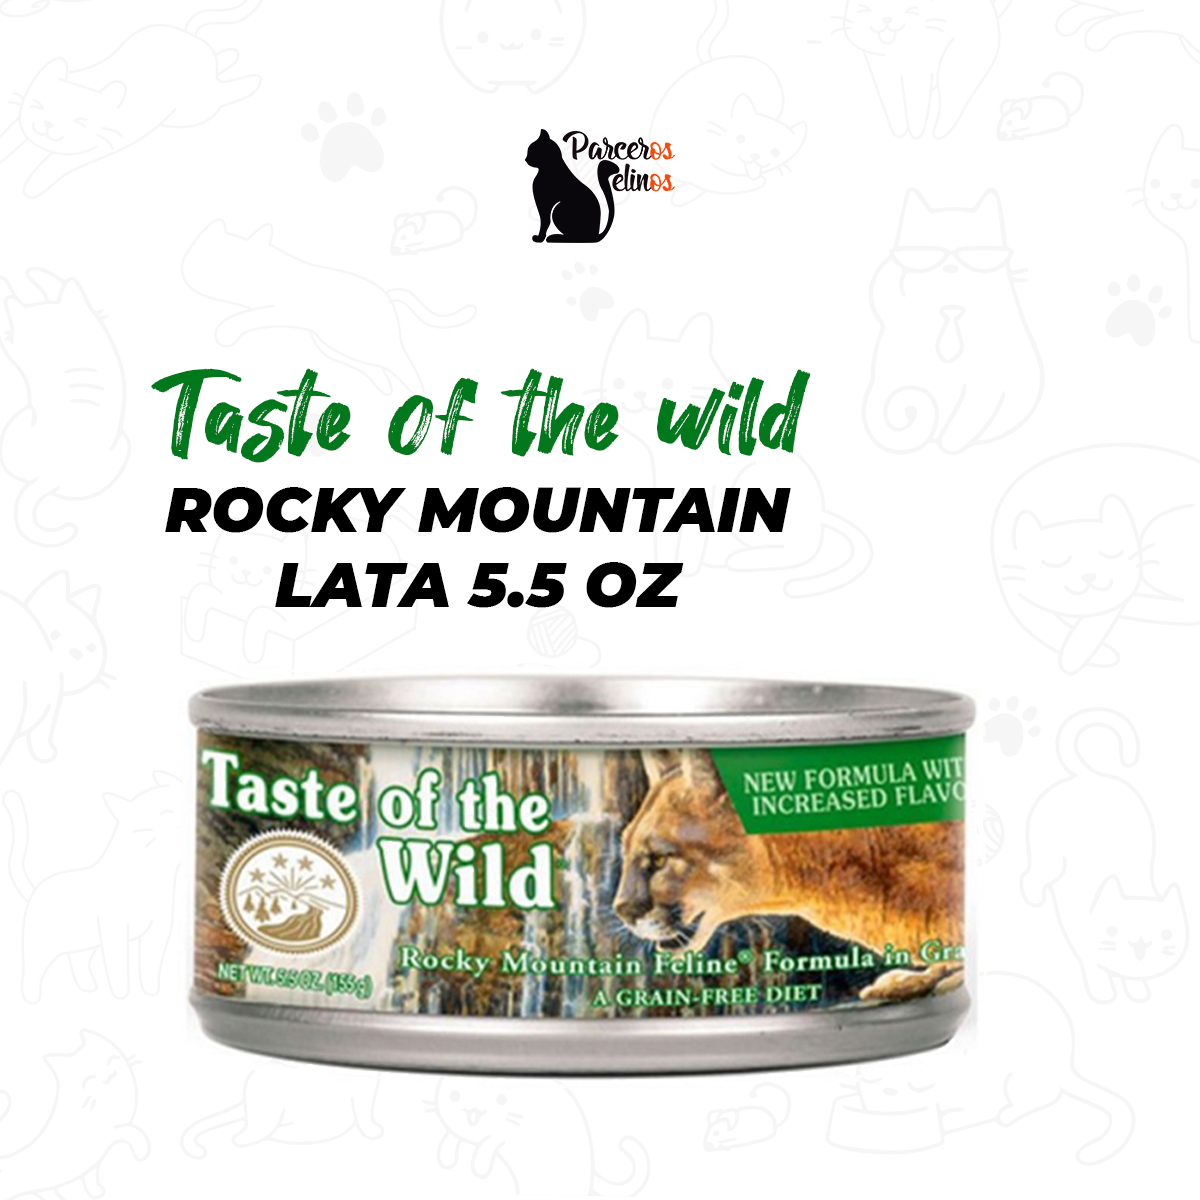 Qué tan bueno es el alimento Taste of the Wild Gatos?